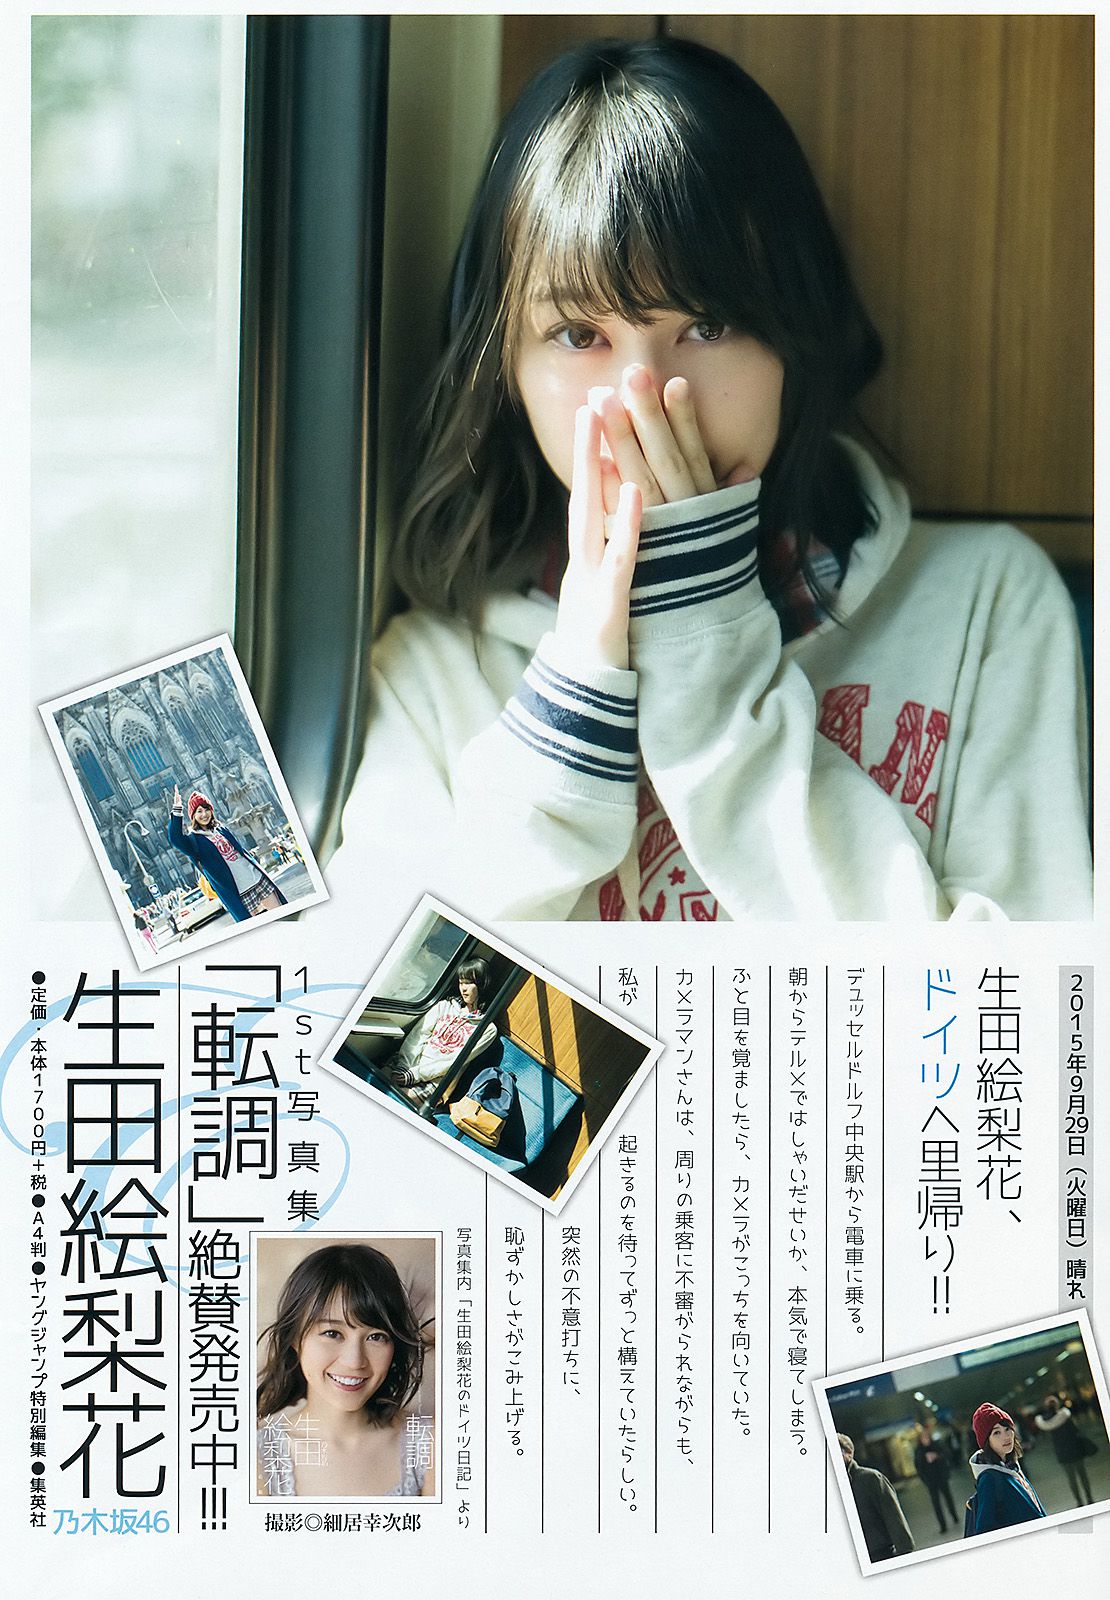 Akari Uemura Hazuki Nishioka [Weekly Young Jump] 2016 No.10 Photograph Page 6 No.29c0cd